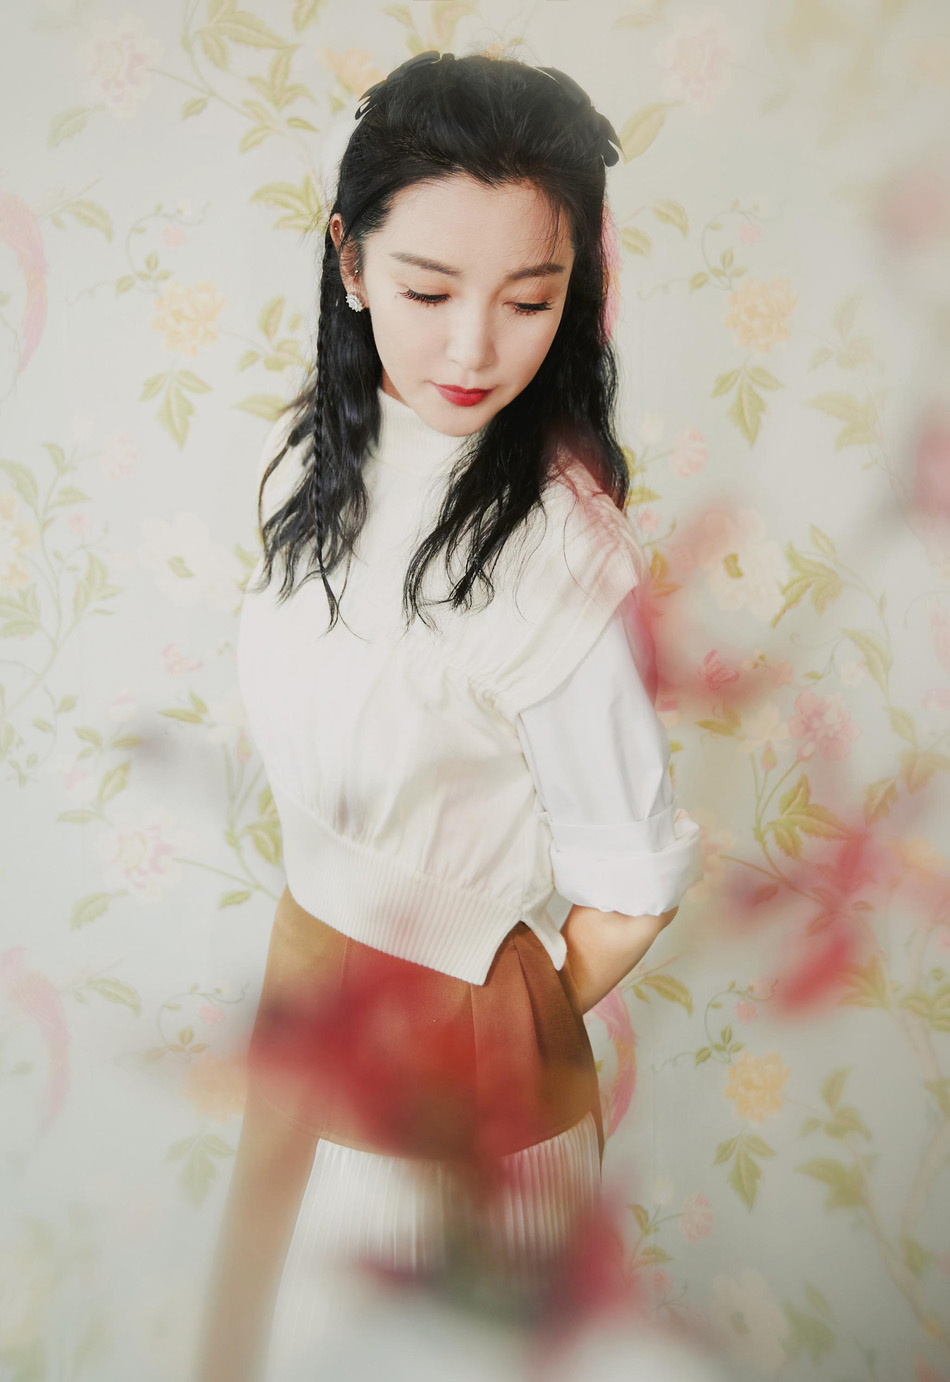 网络女歌手李冰照片图片